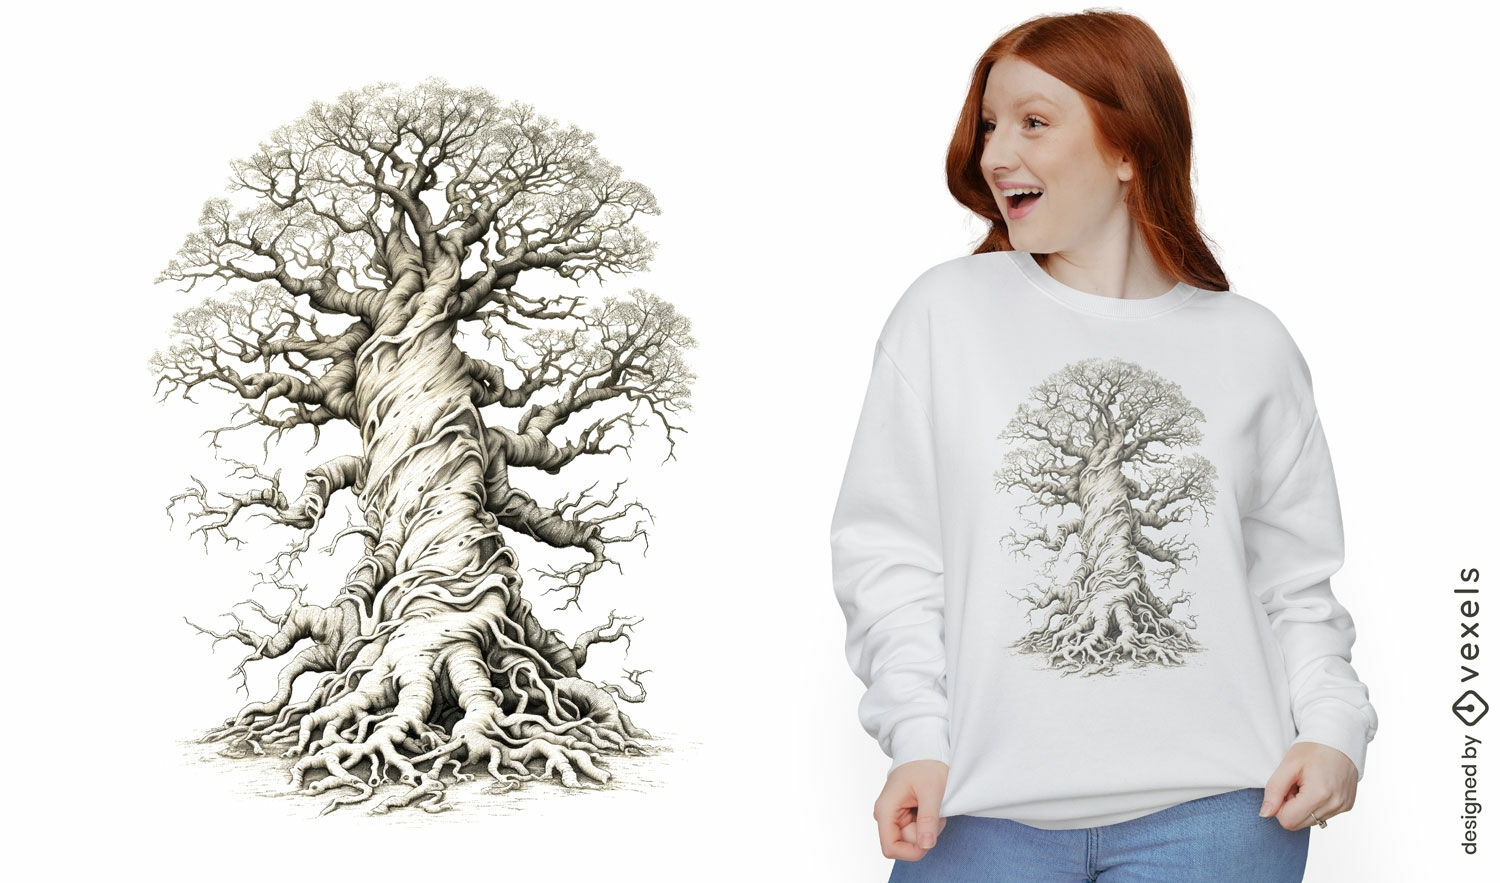 Diseño de camiseta de raíces grandes de árbol.